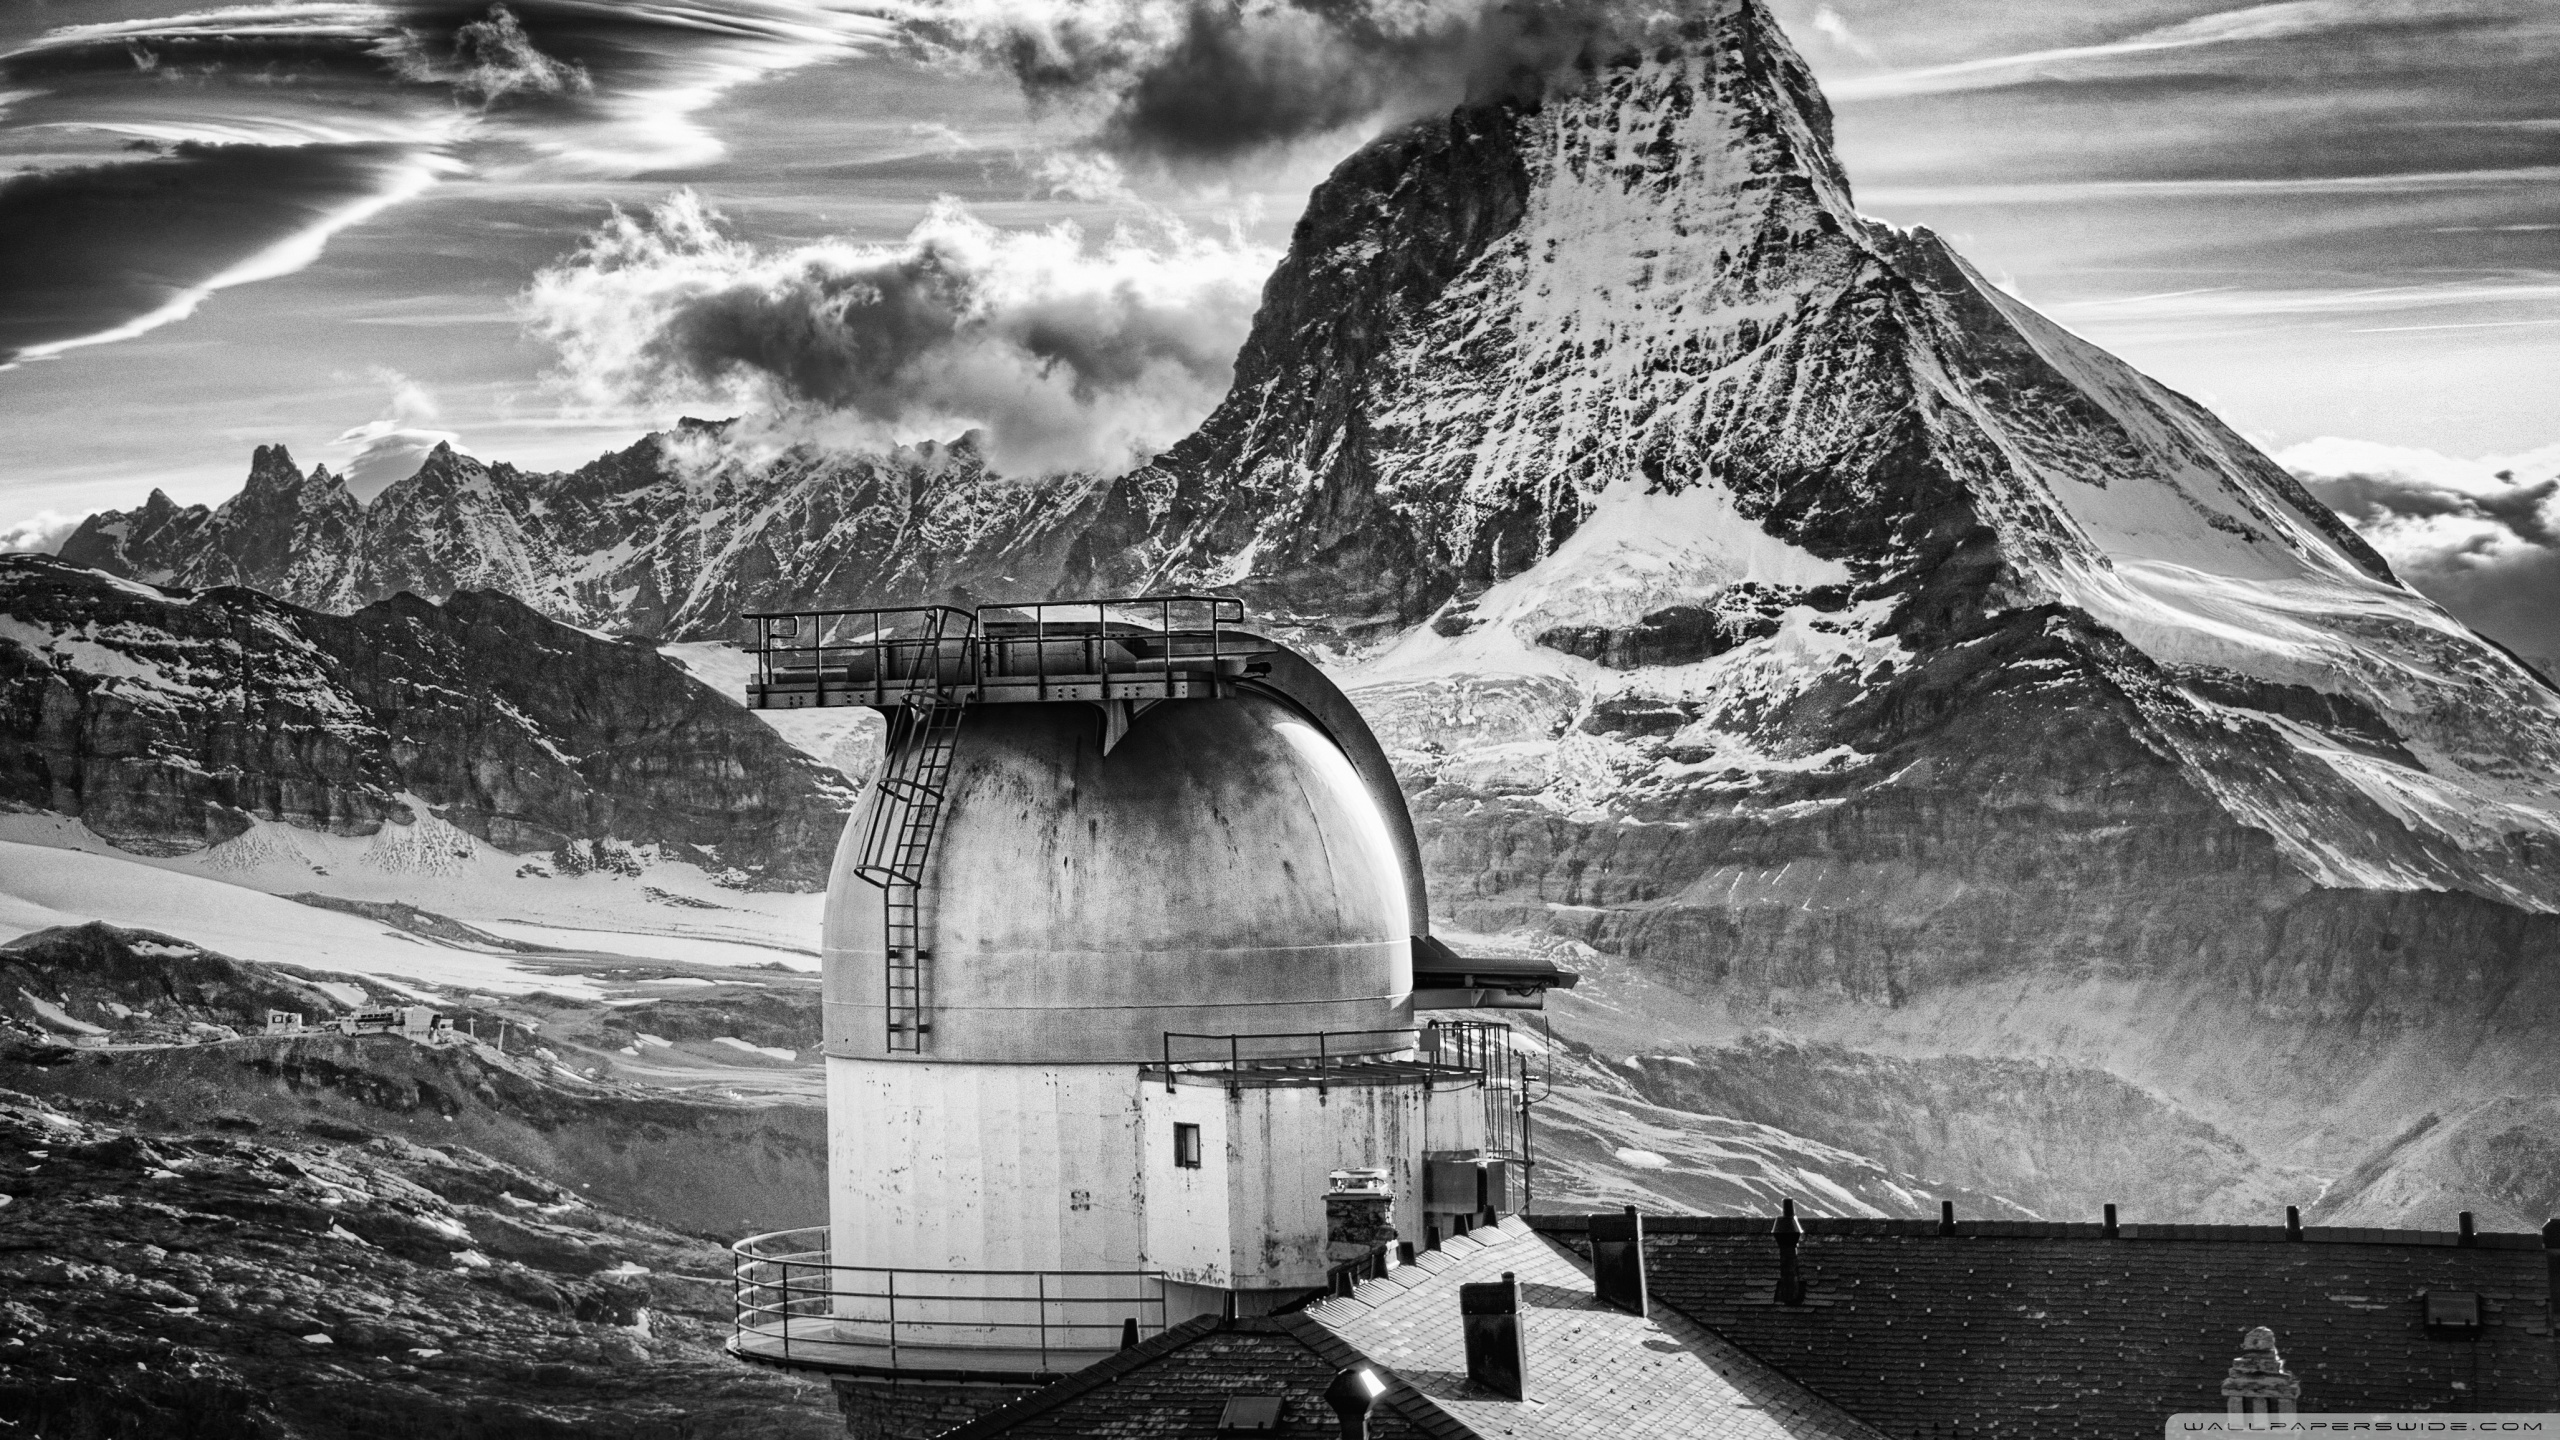 Hd 16 - - Matterhorn , HD Wallpaper & Backgrounds